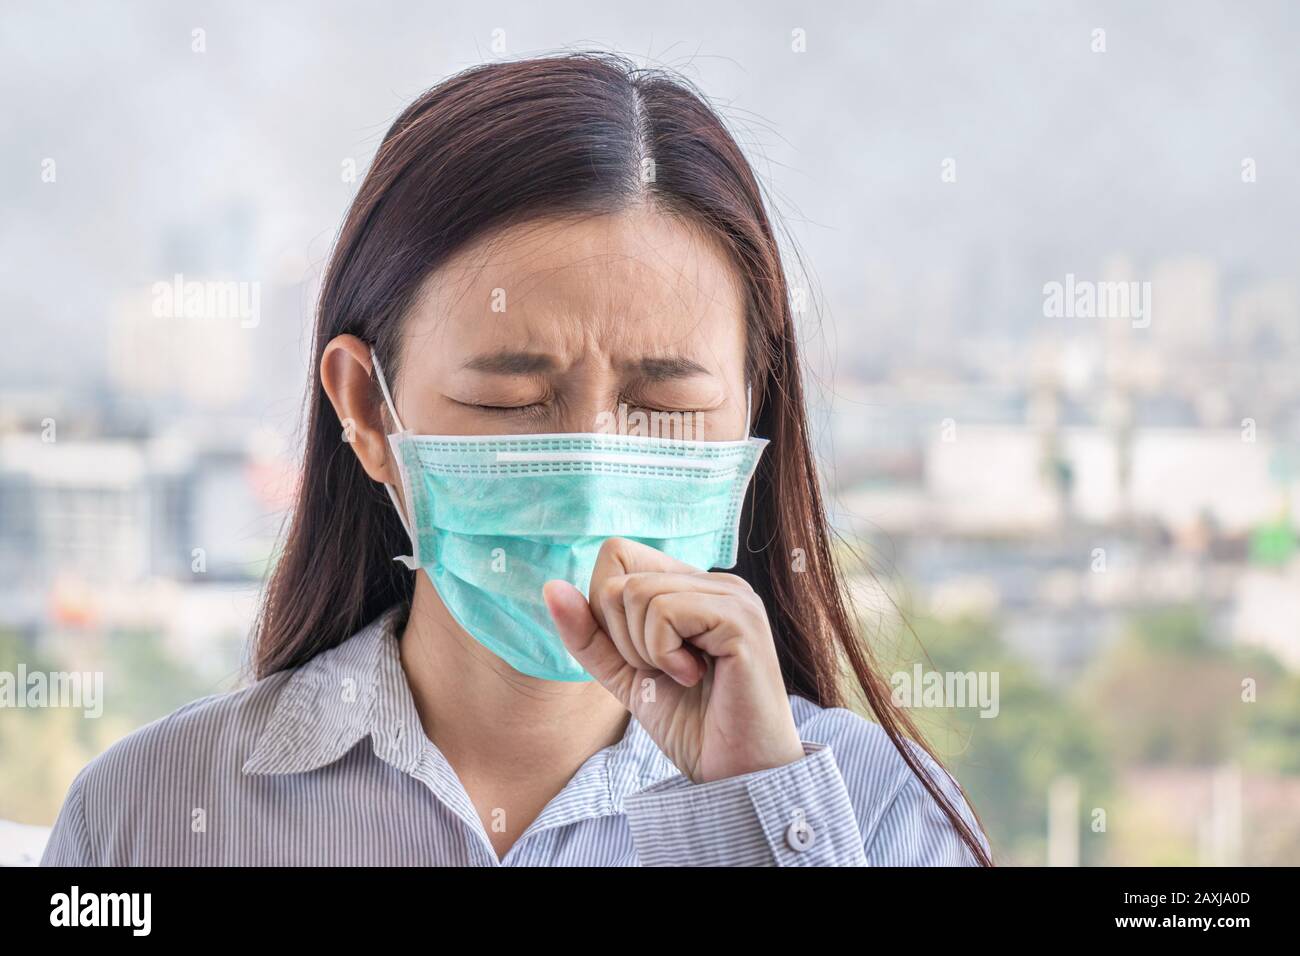 Las personas que se sienten enfermas por la contaminación del aire, el medio ambiente tiene efectos nocivos o venenosos. La mujer de la ciudad que lleva máscara facial para protegerse Foto de stock